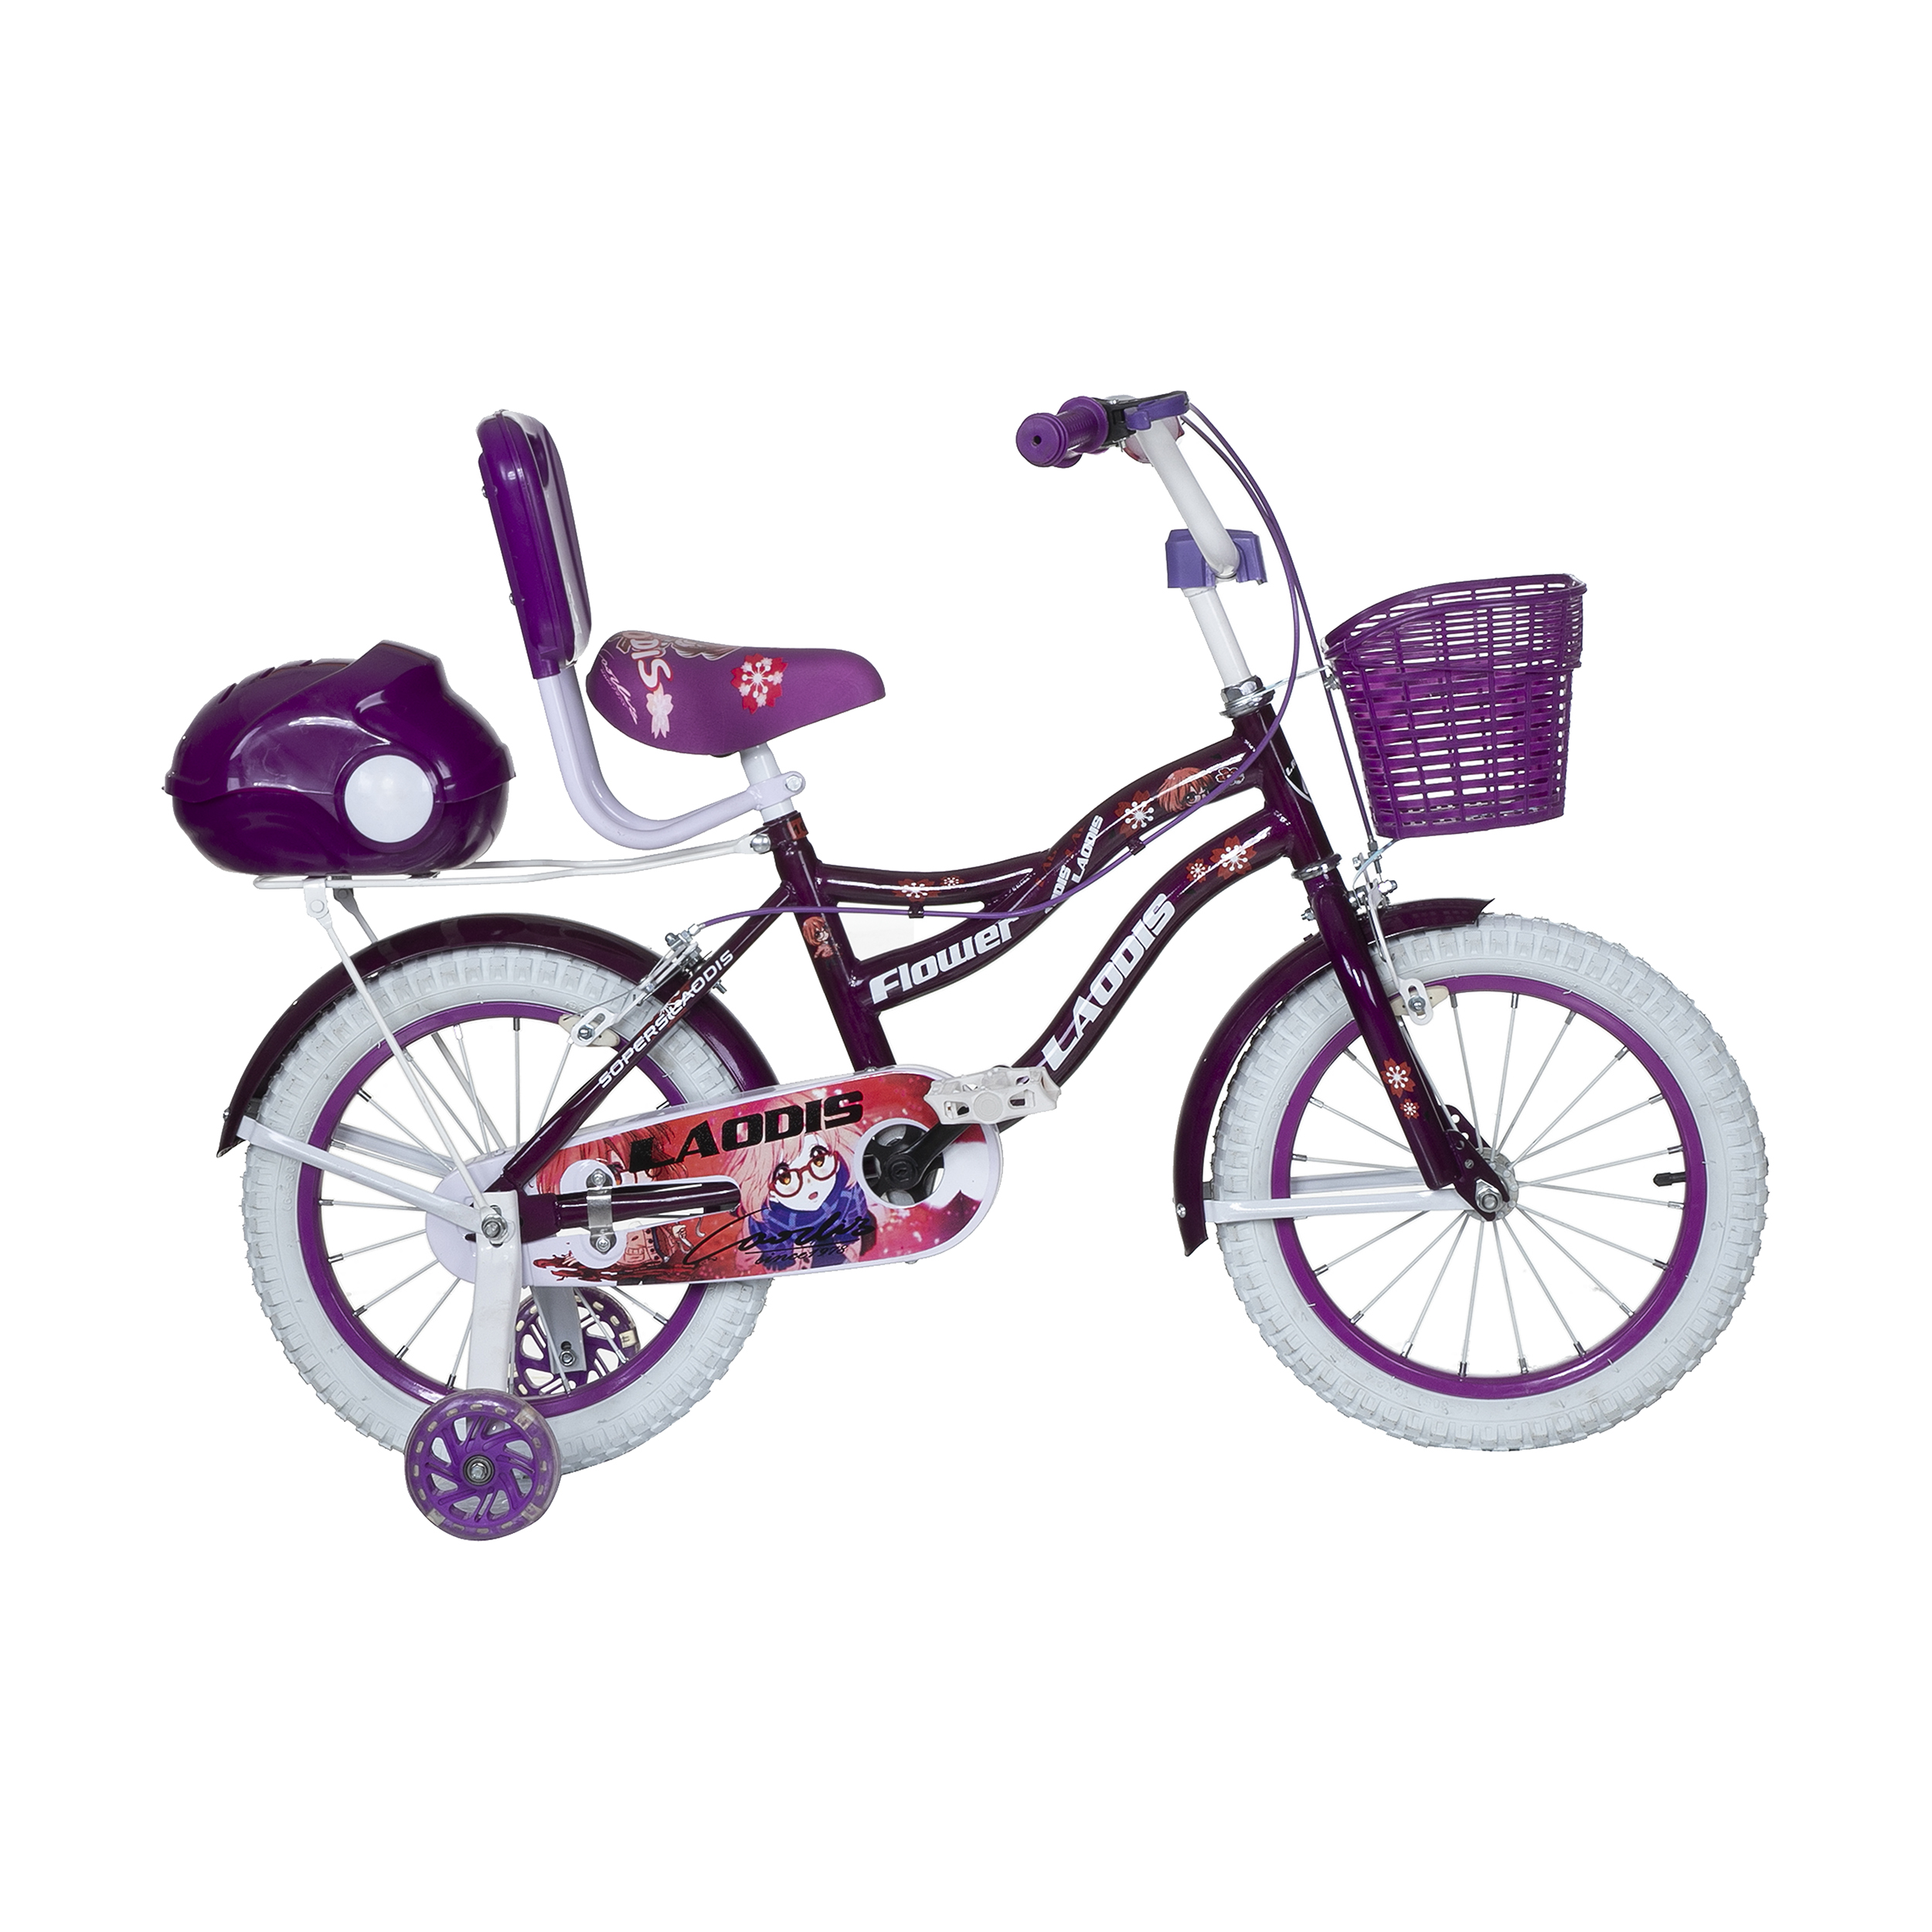 نکته خرید - قیمت روز دوچرخه شهری لاودیس کد 16135-3 سایز 16 خرید